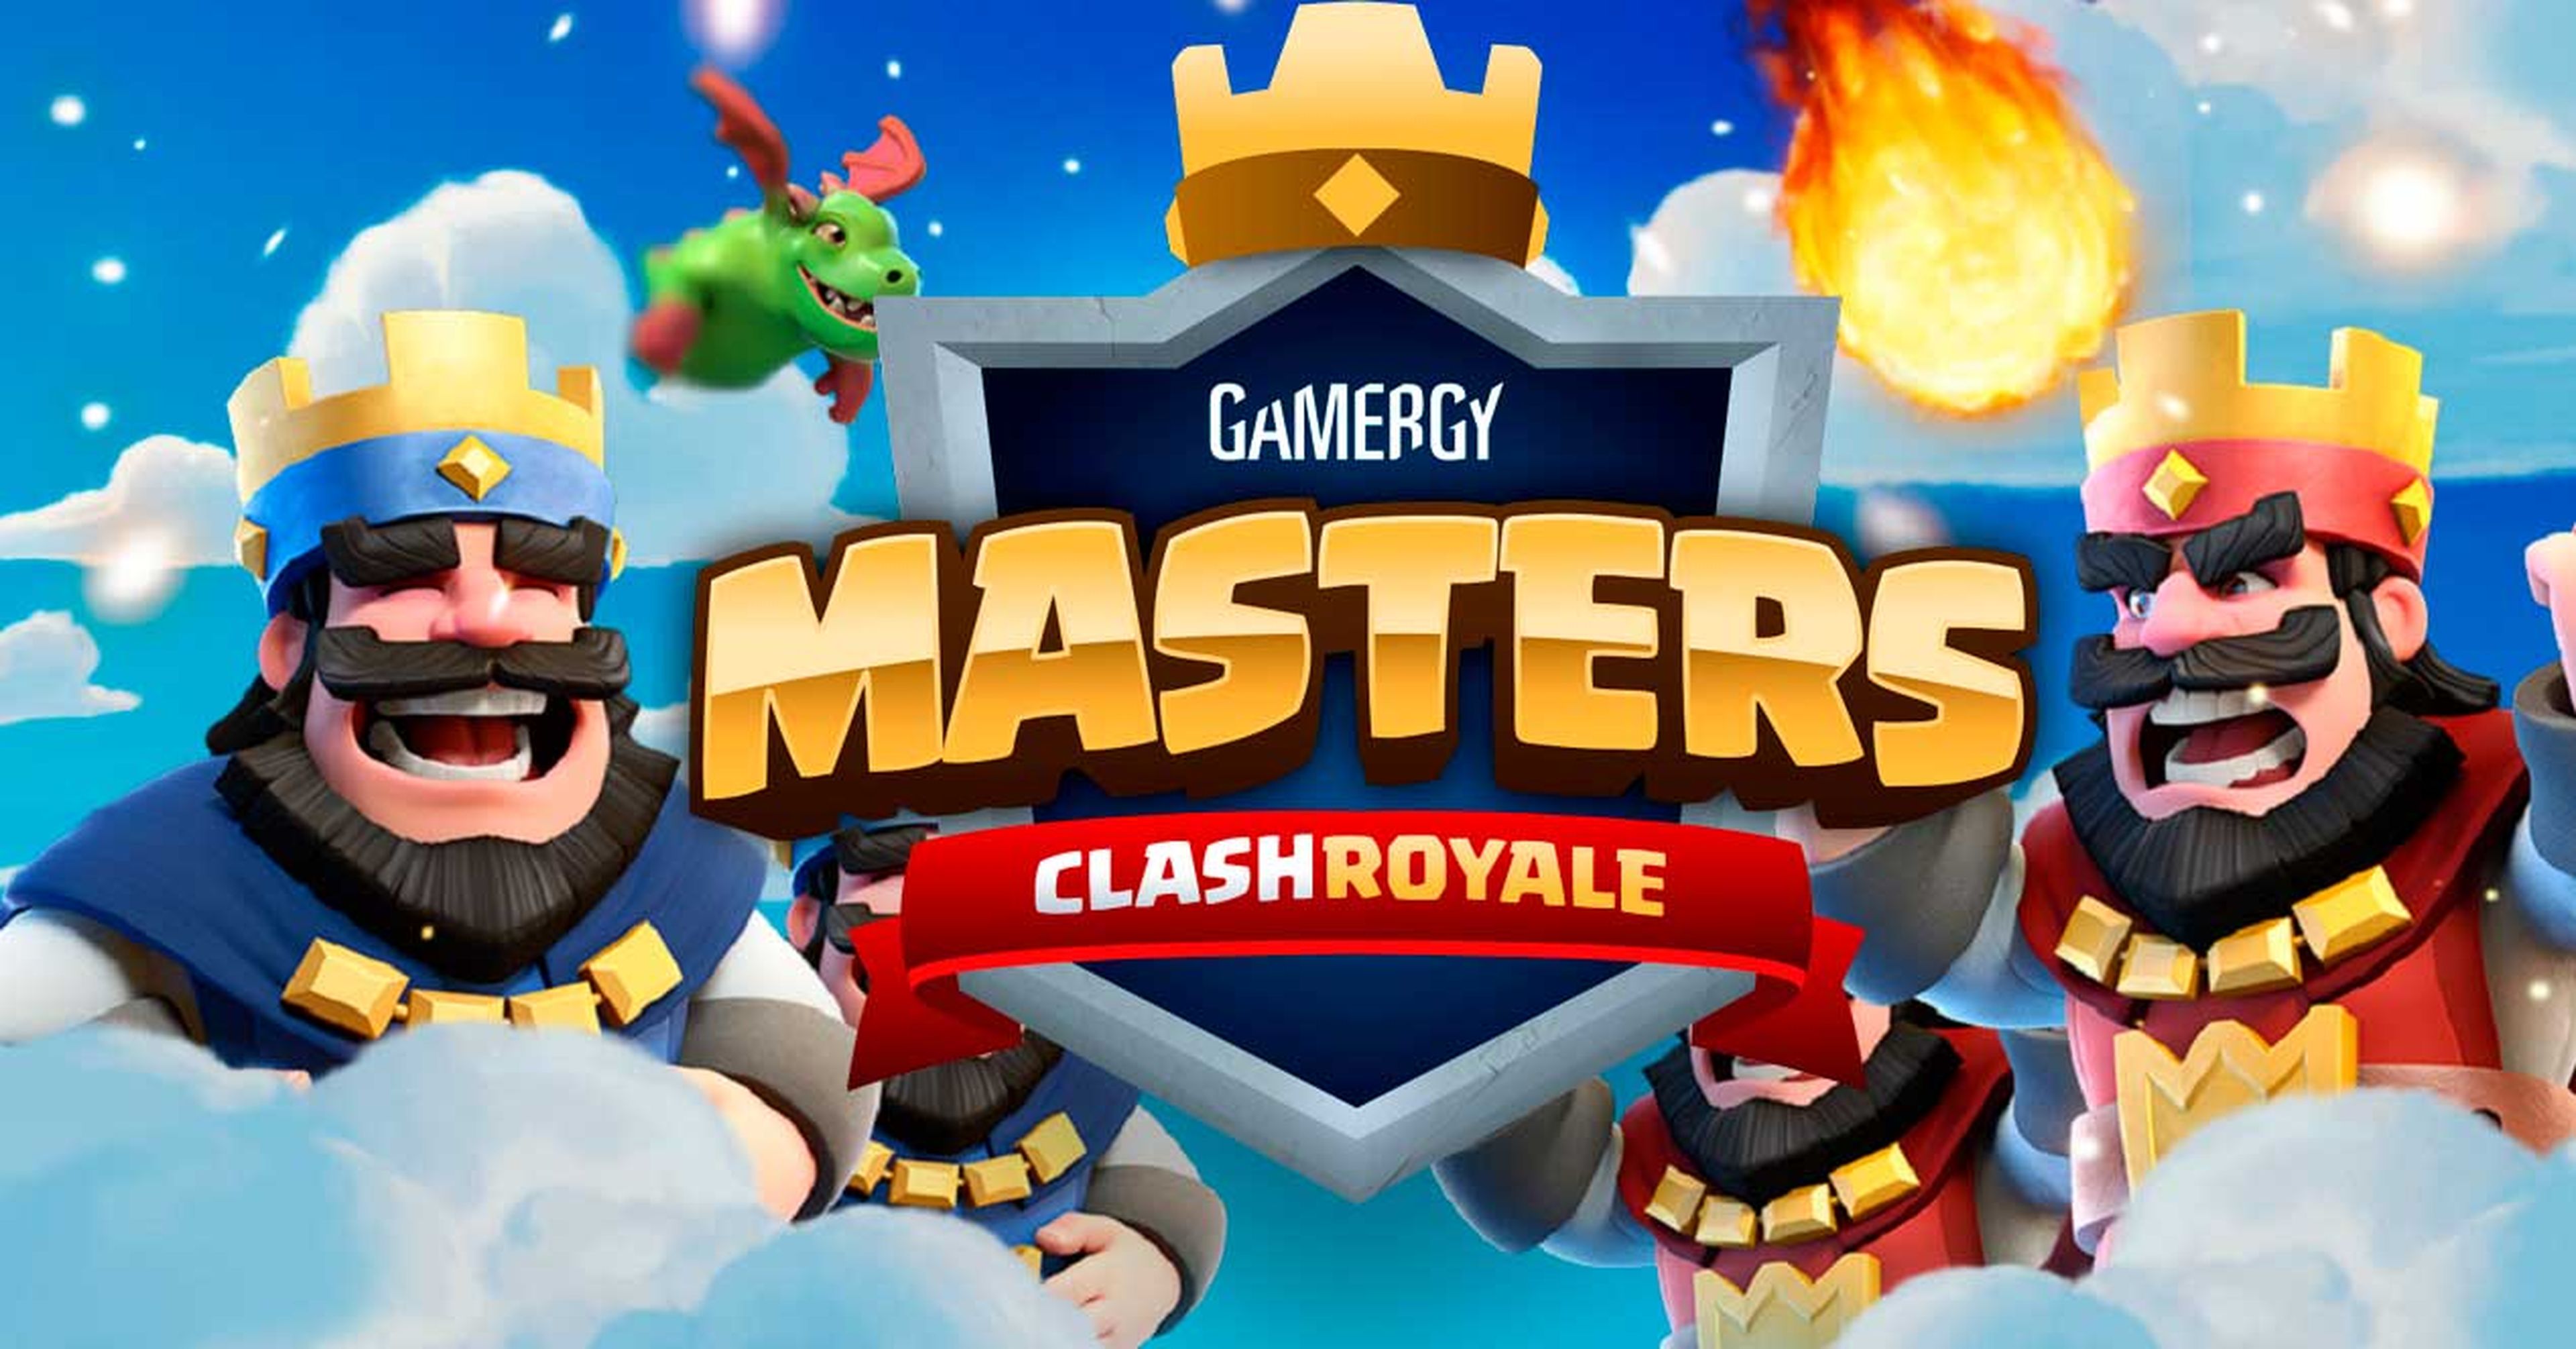 Gamergy Masters Clash Royale